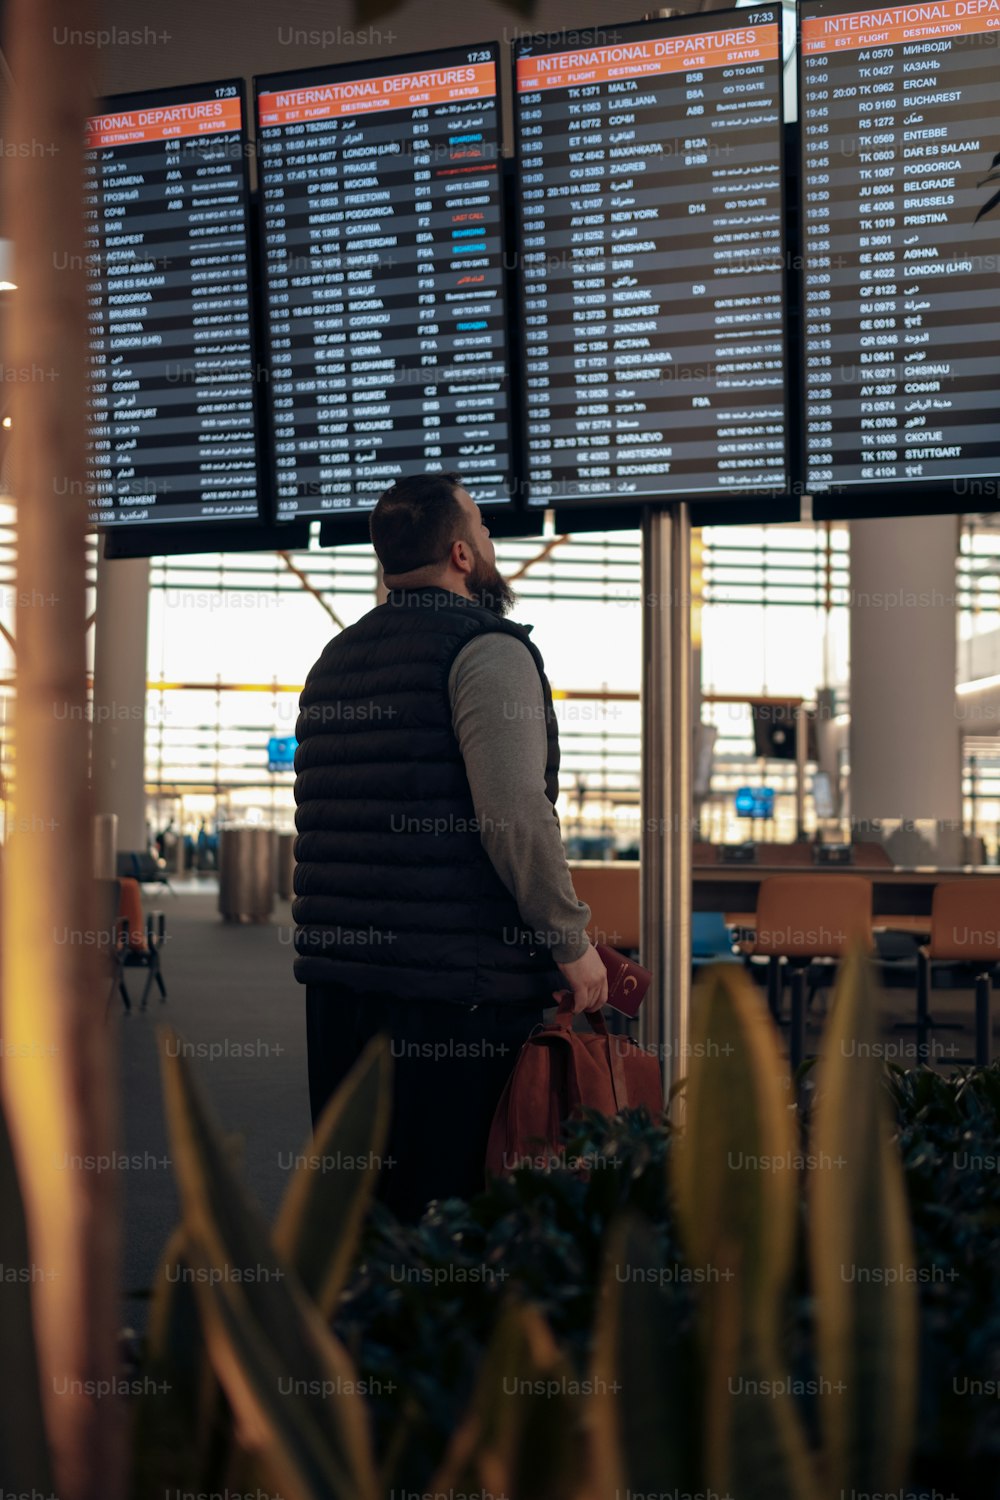 Ein Mann steht vor einer großen Leinwand an einem Flughafen